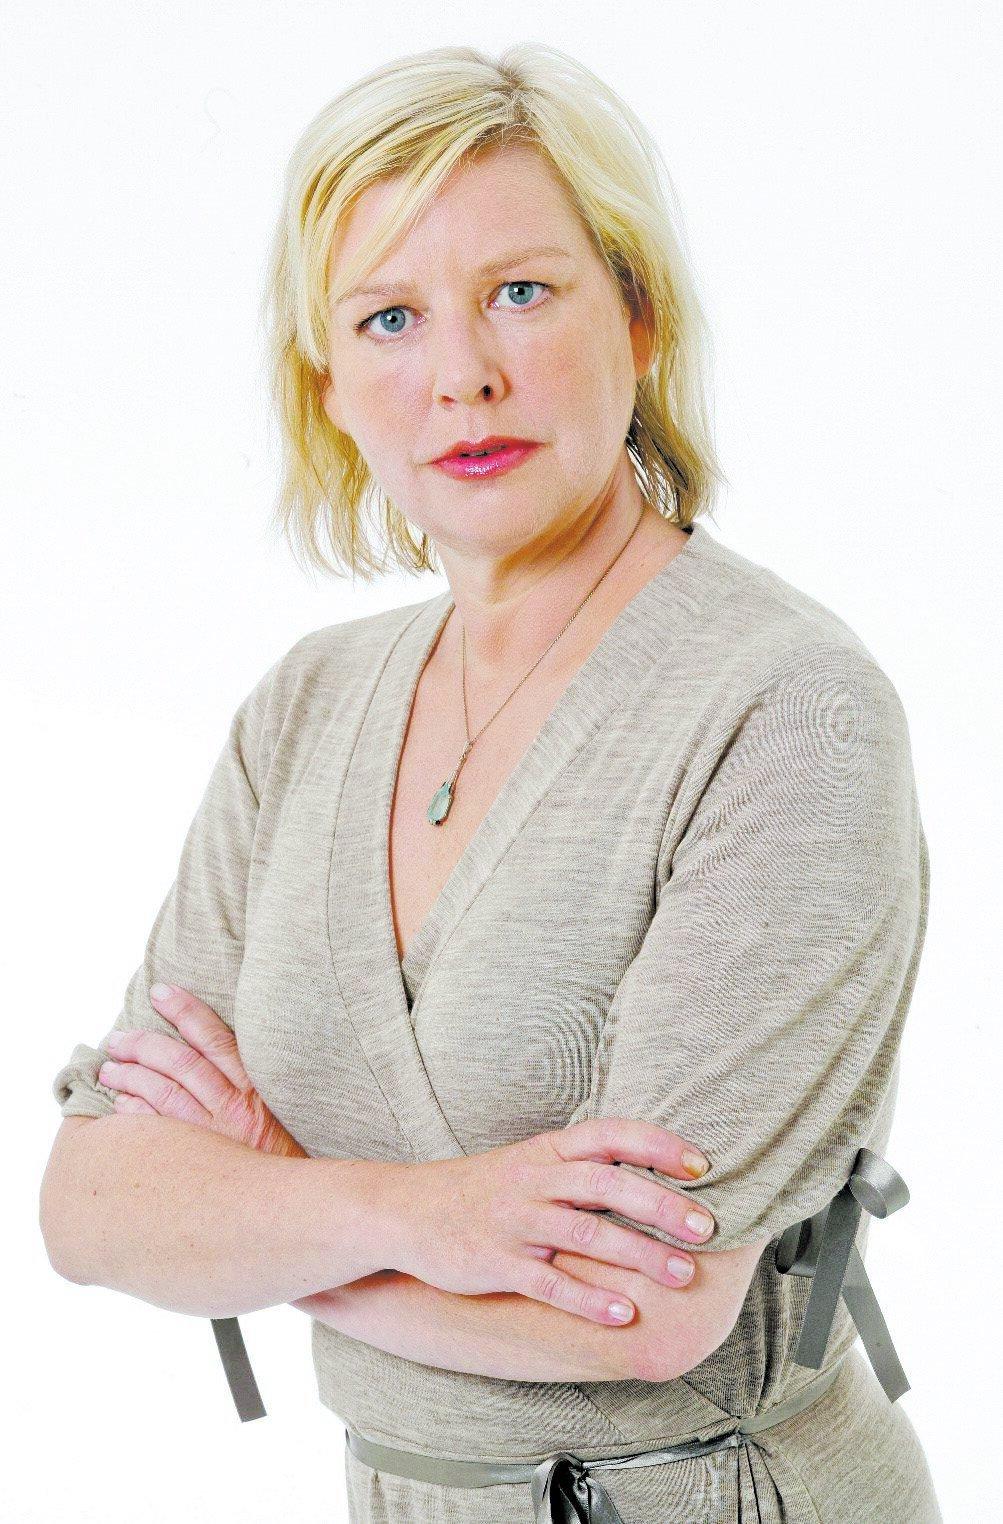 Aftonbladets reporter och matskribent Karin Ahlborg.